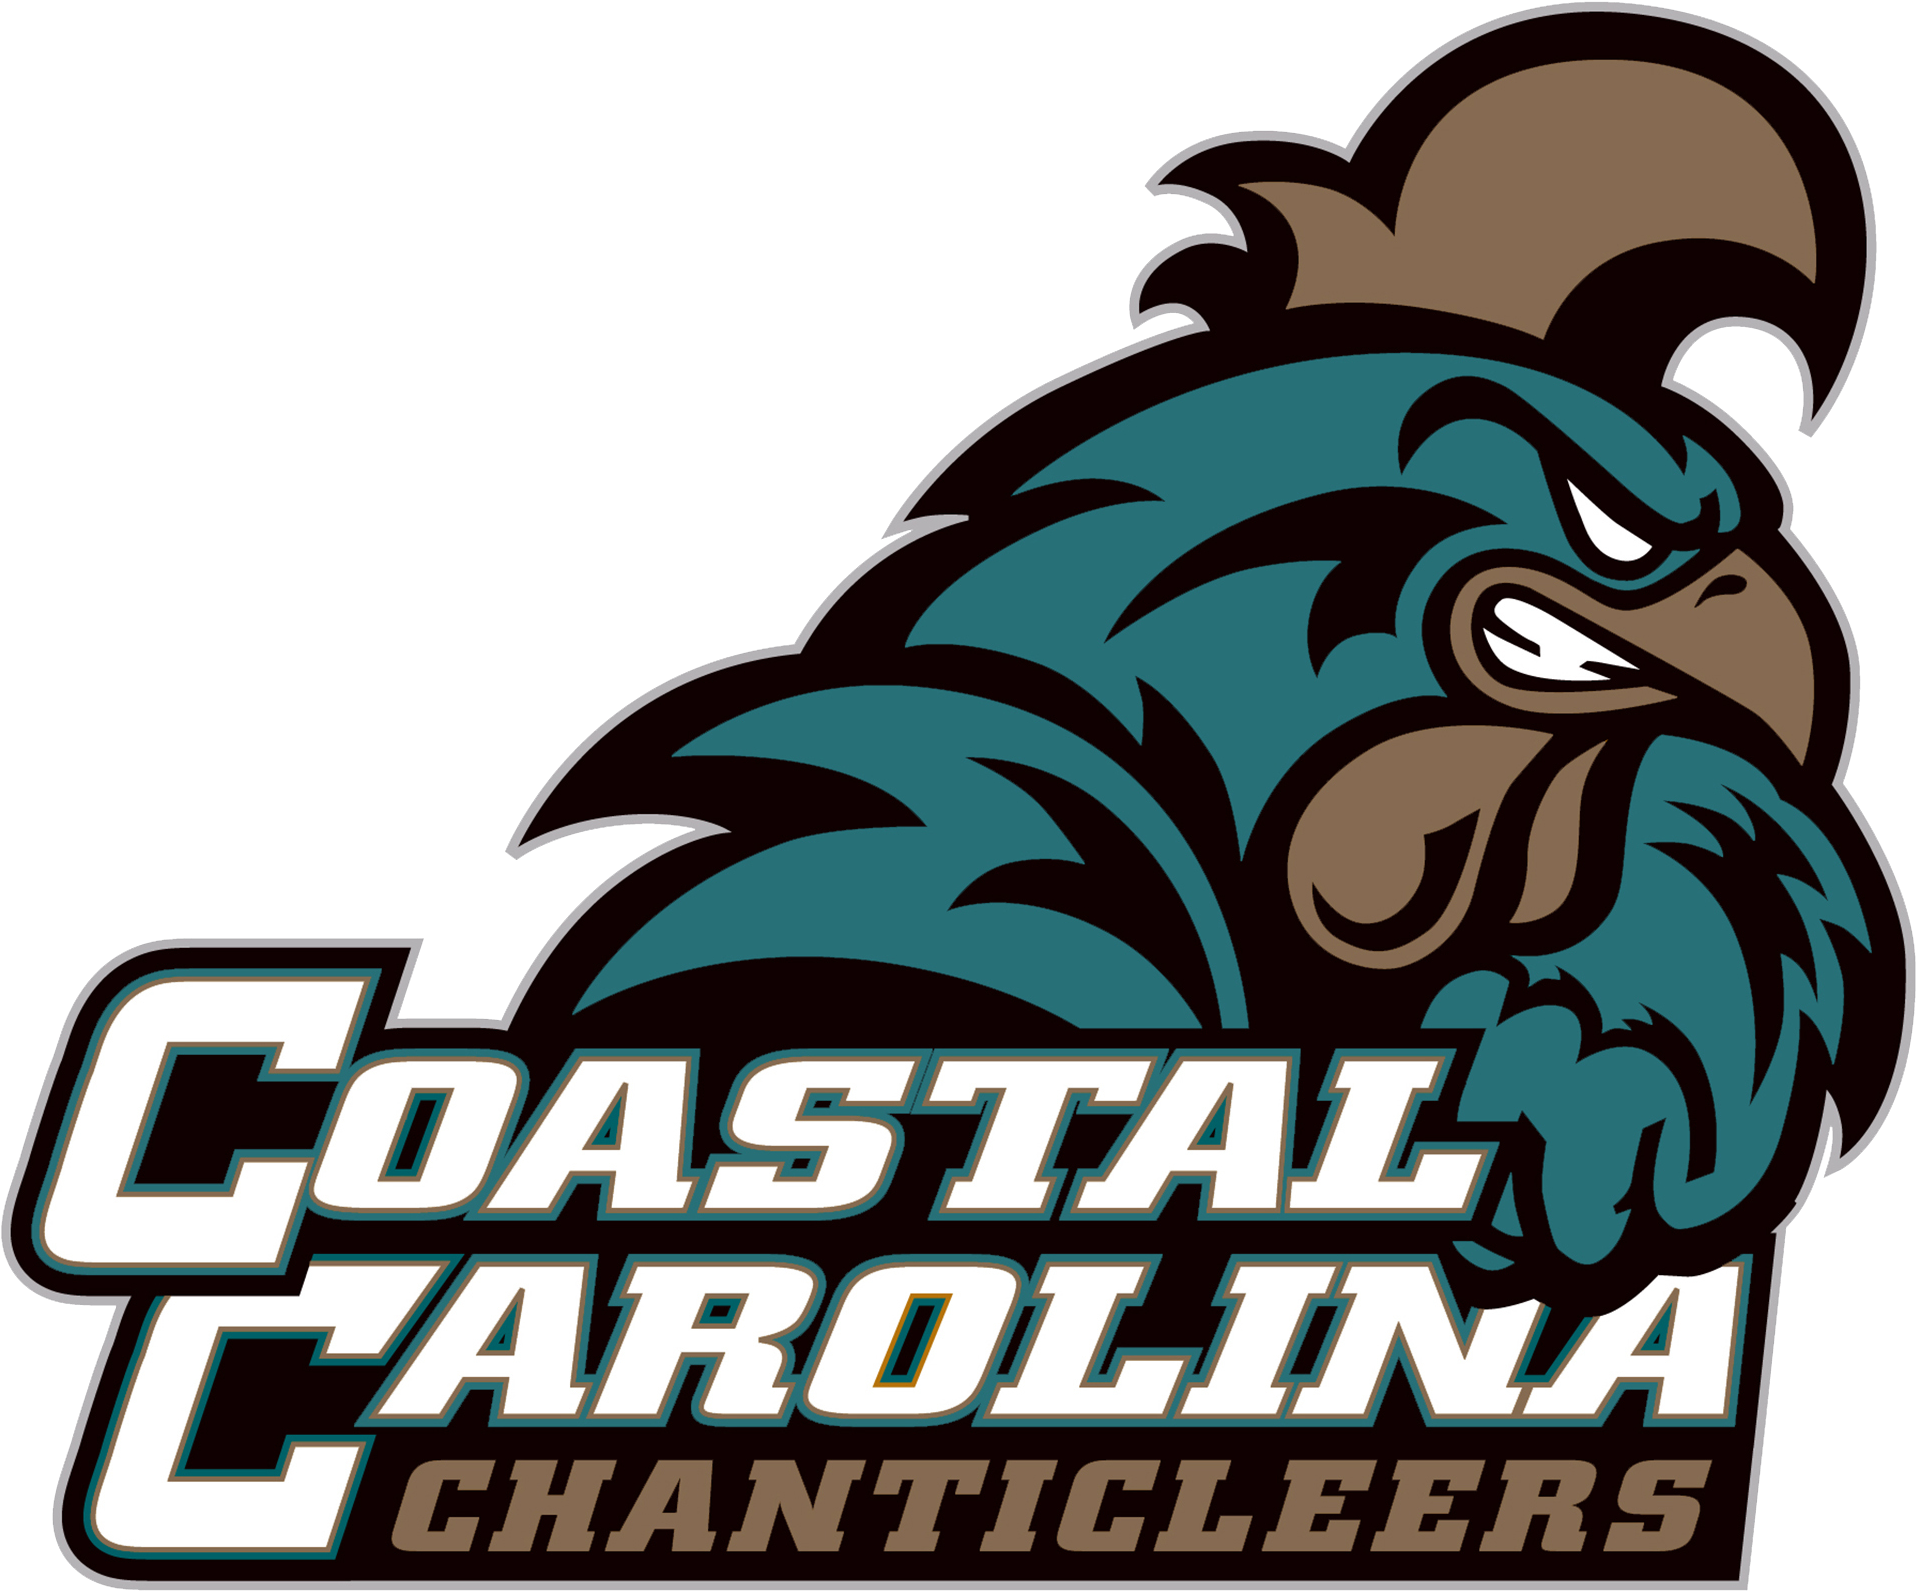 The Coastal Carolina Chanticleers Vs - Coastal Carolina Chanticleers Baseball (1950x1621)